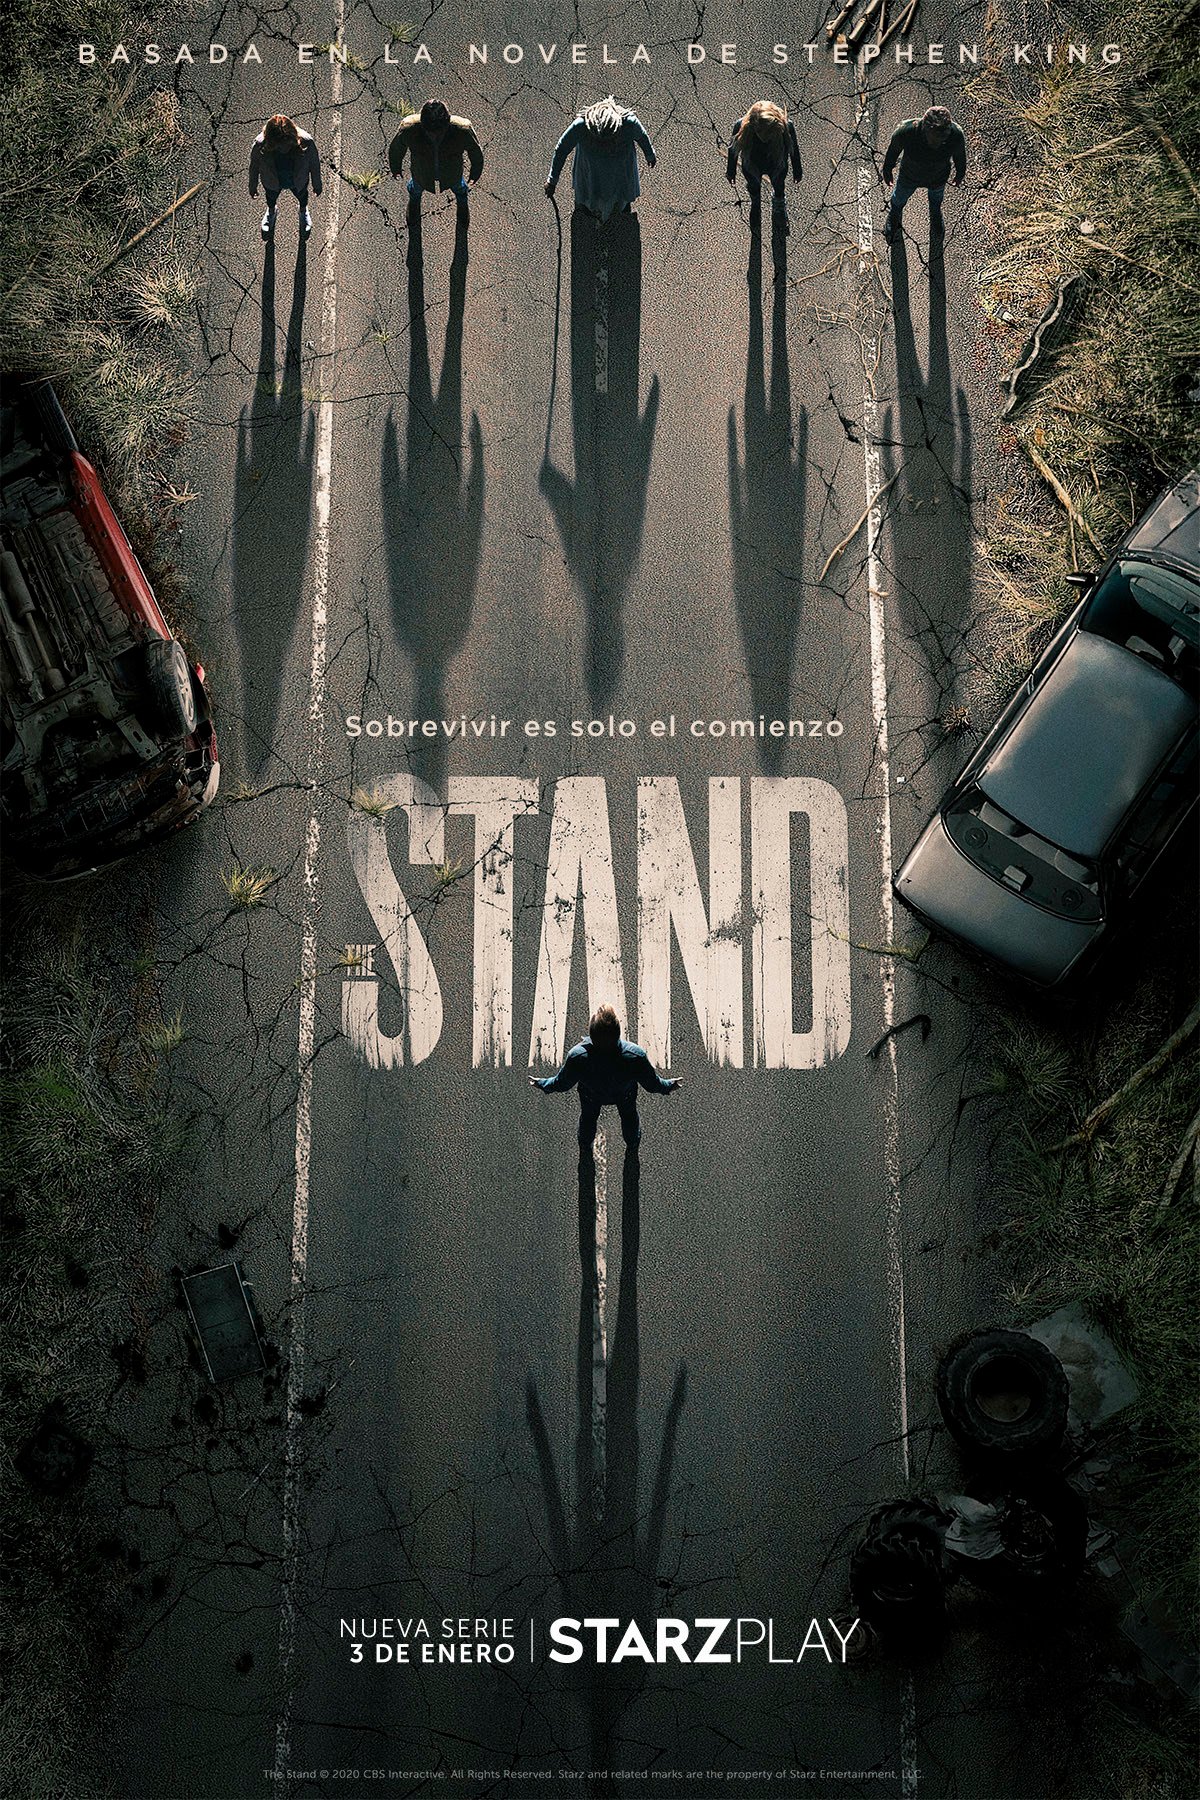 The Stand Temporada 1